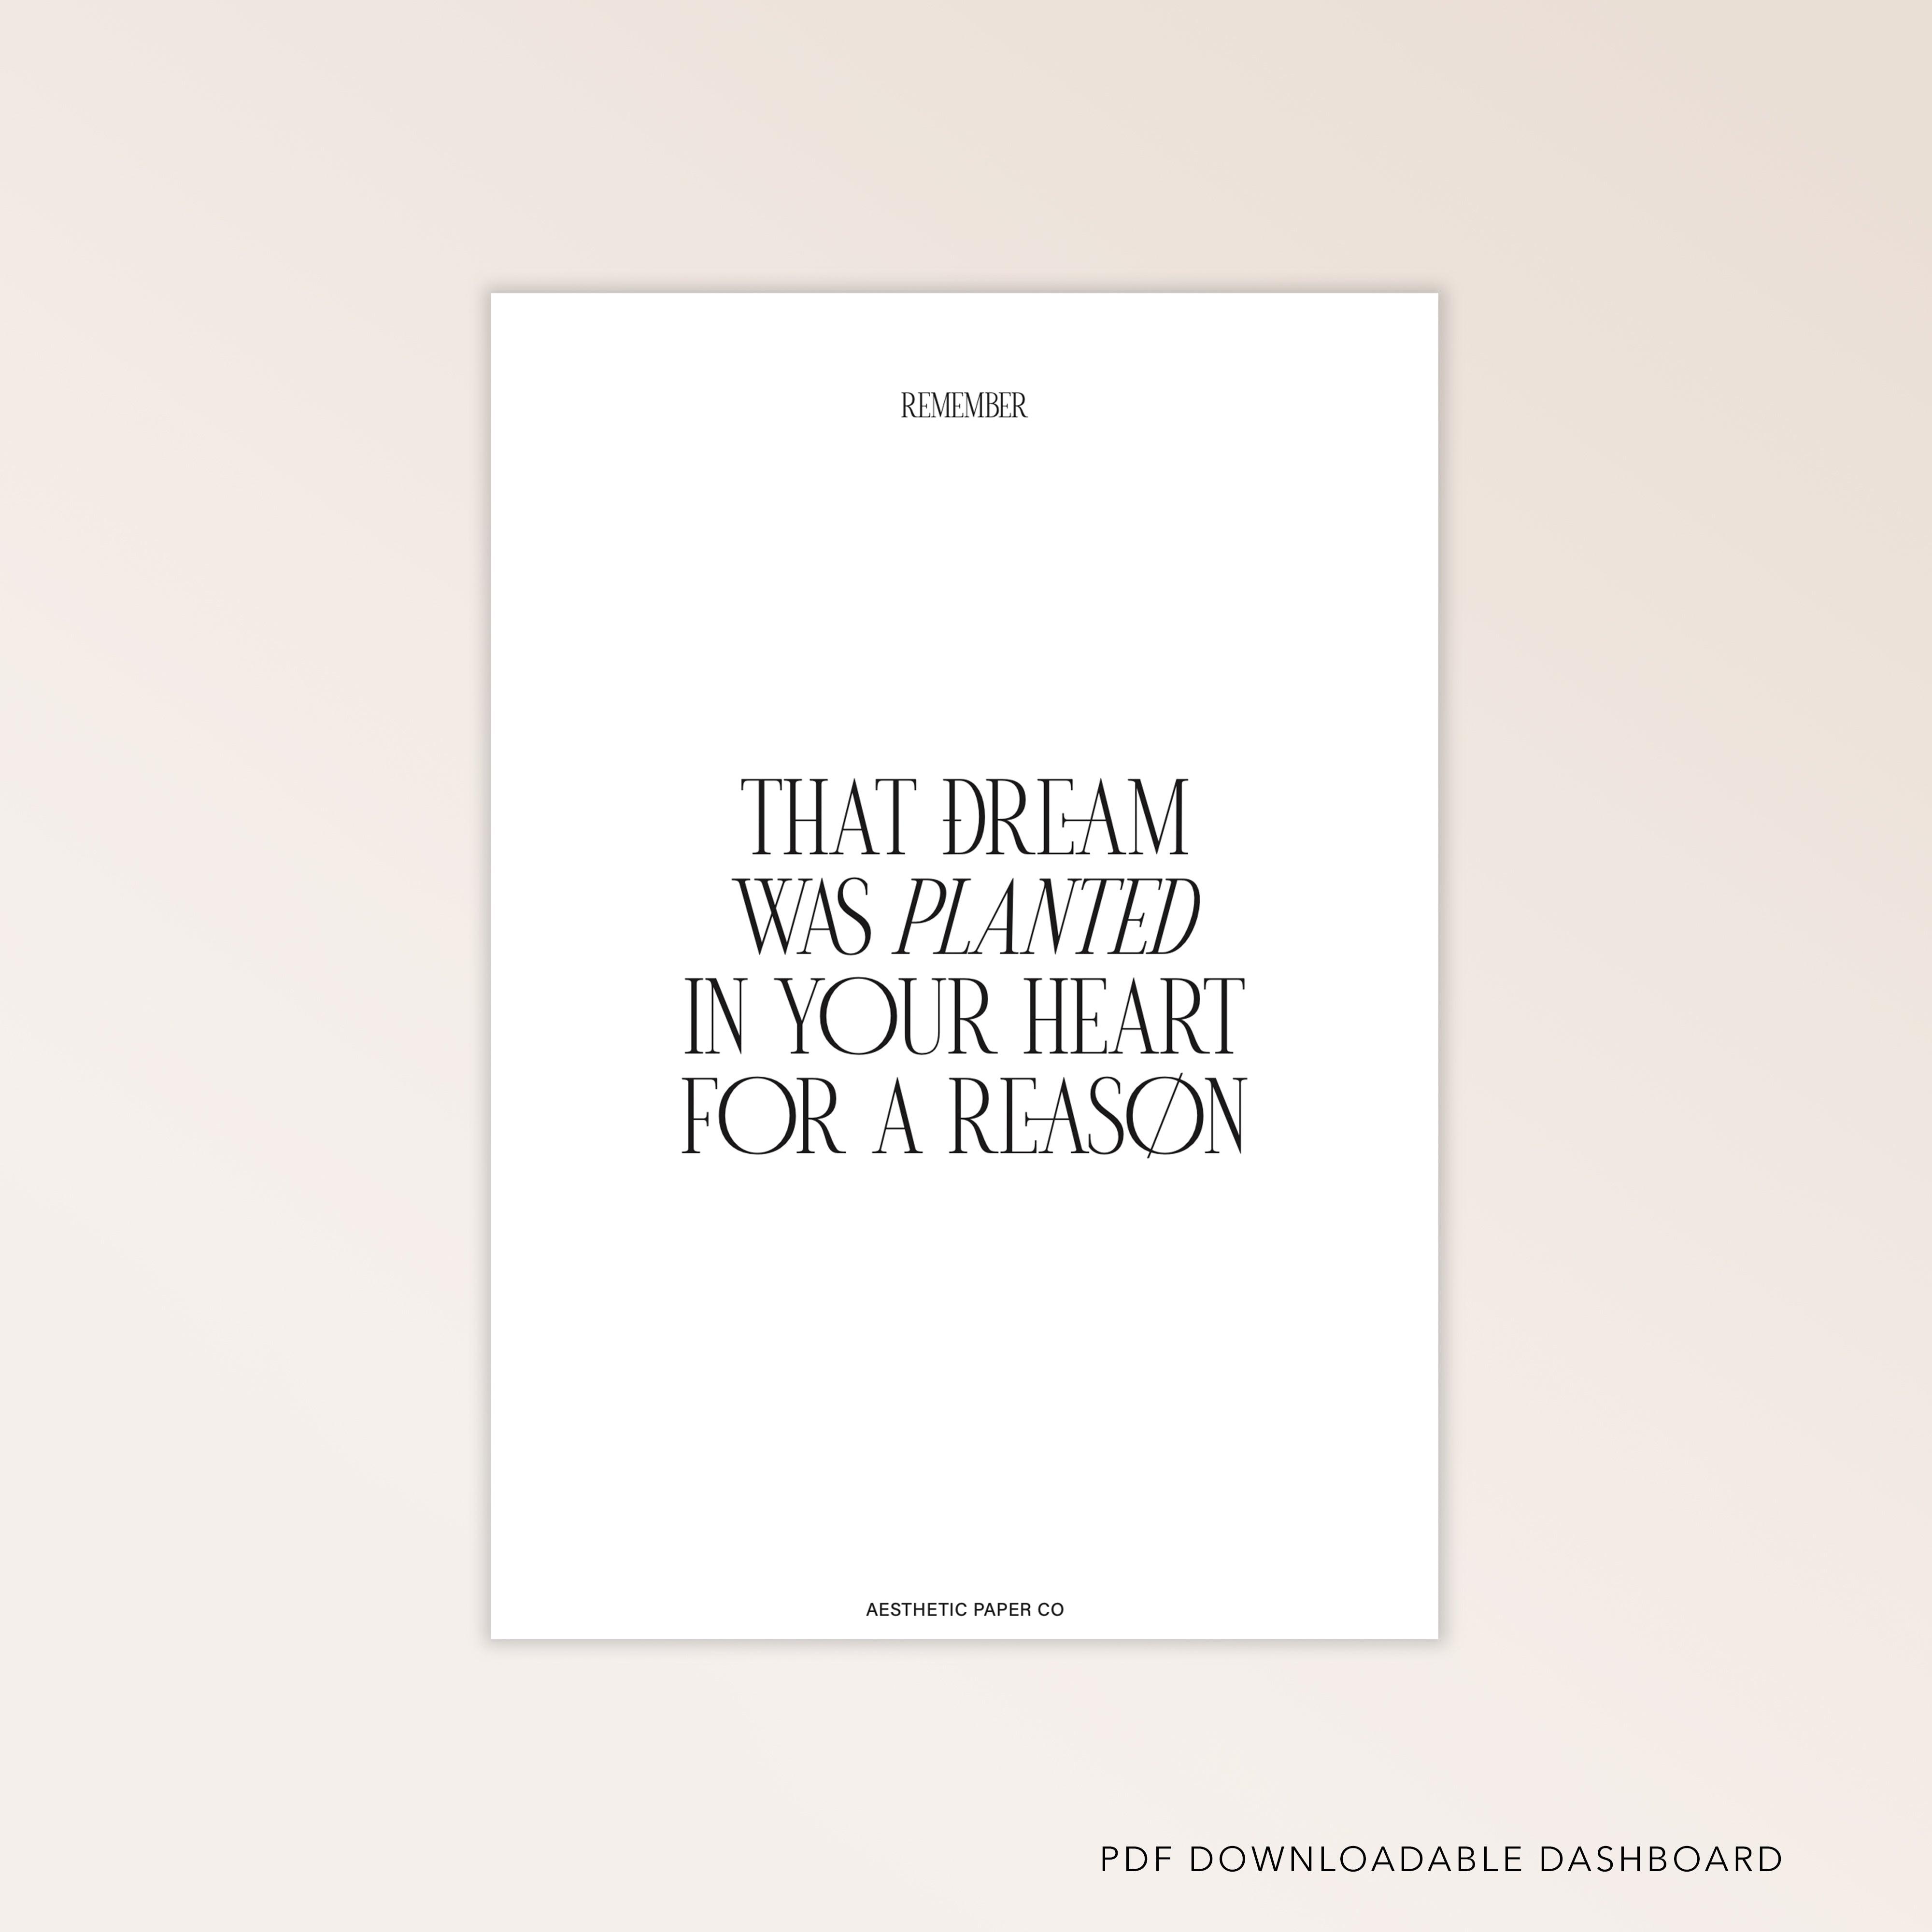 'THAT DREAM' DASHBOARD | FREEBIE